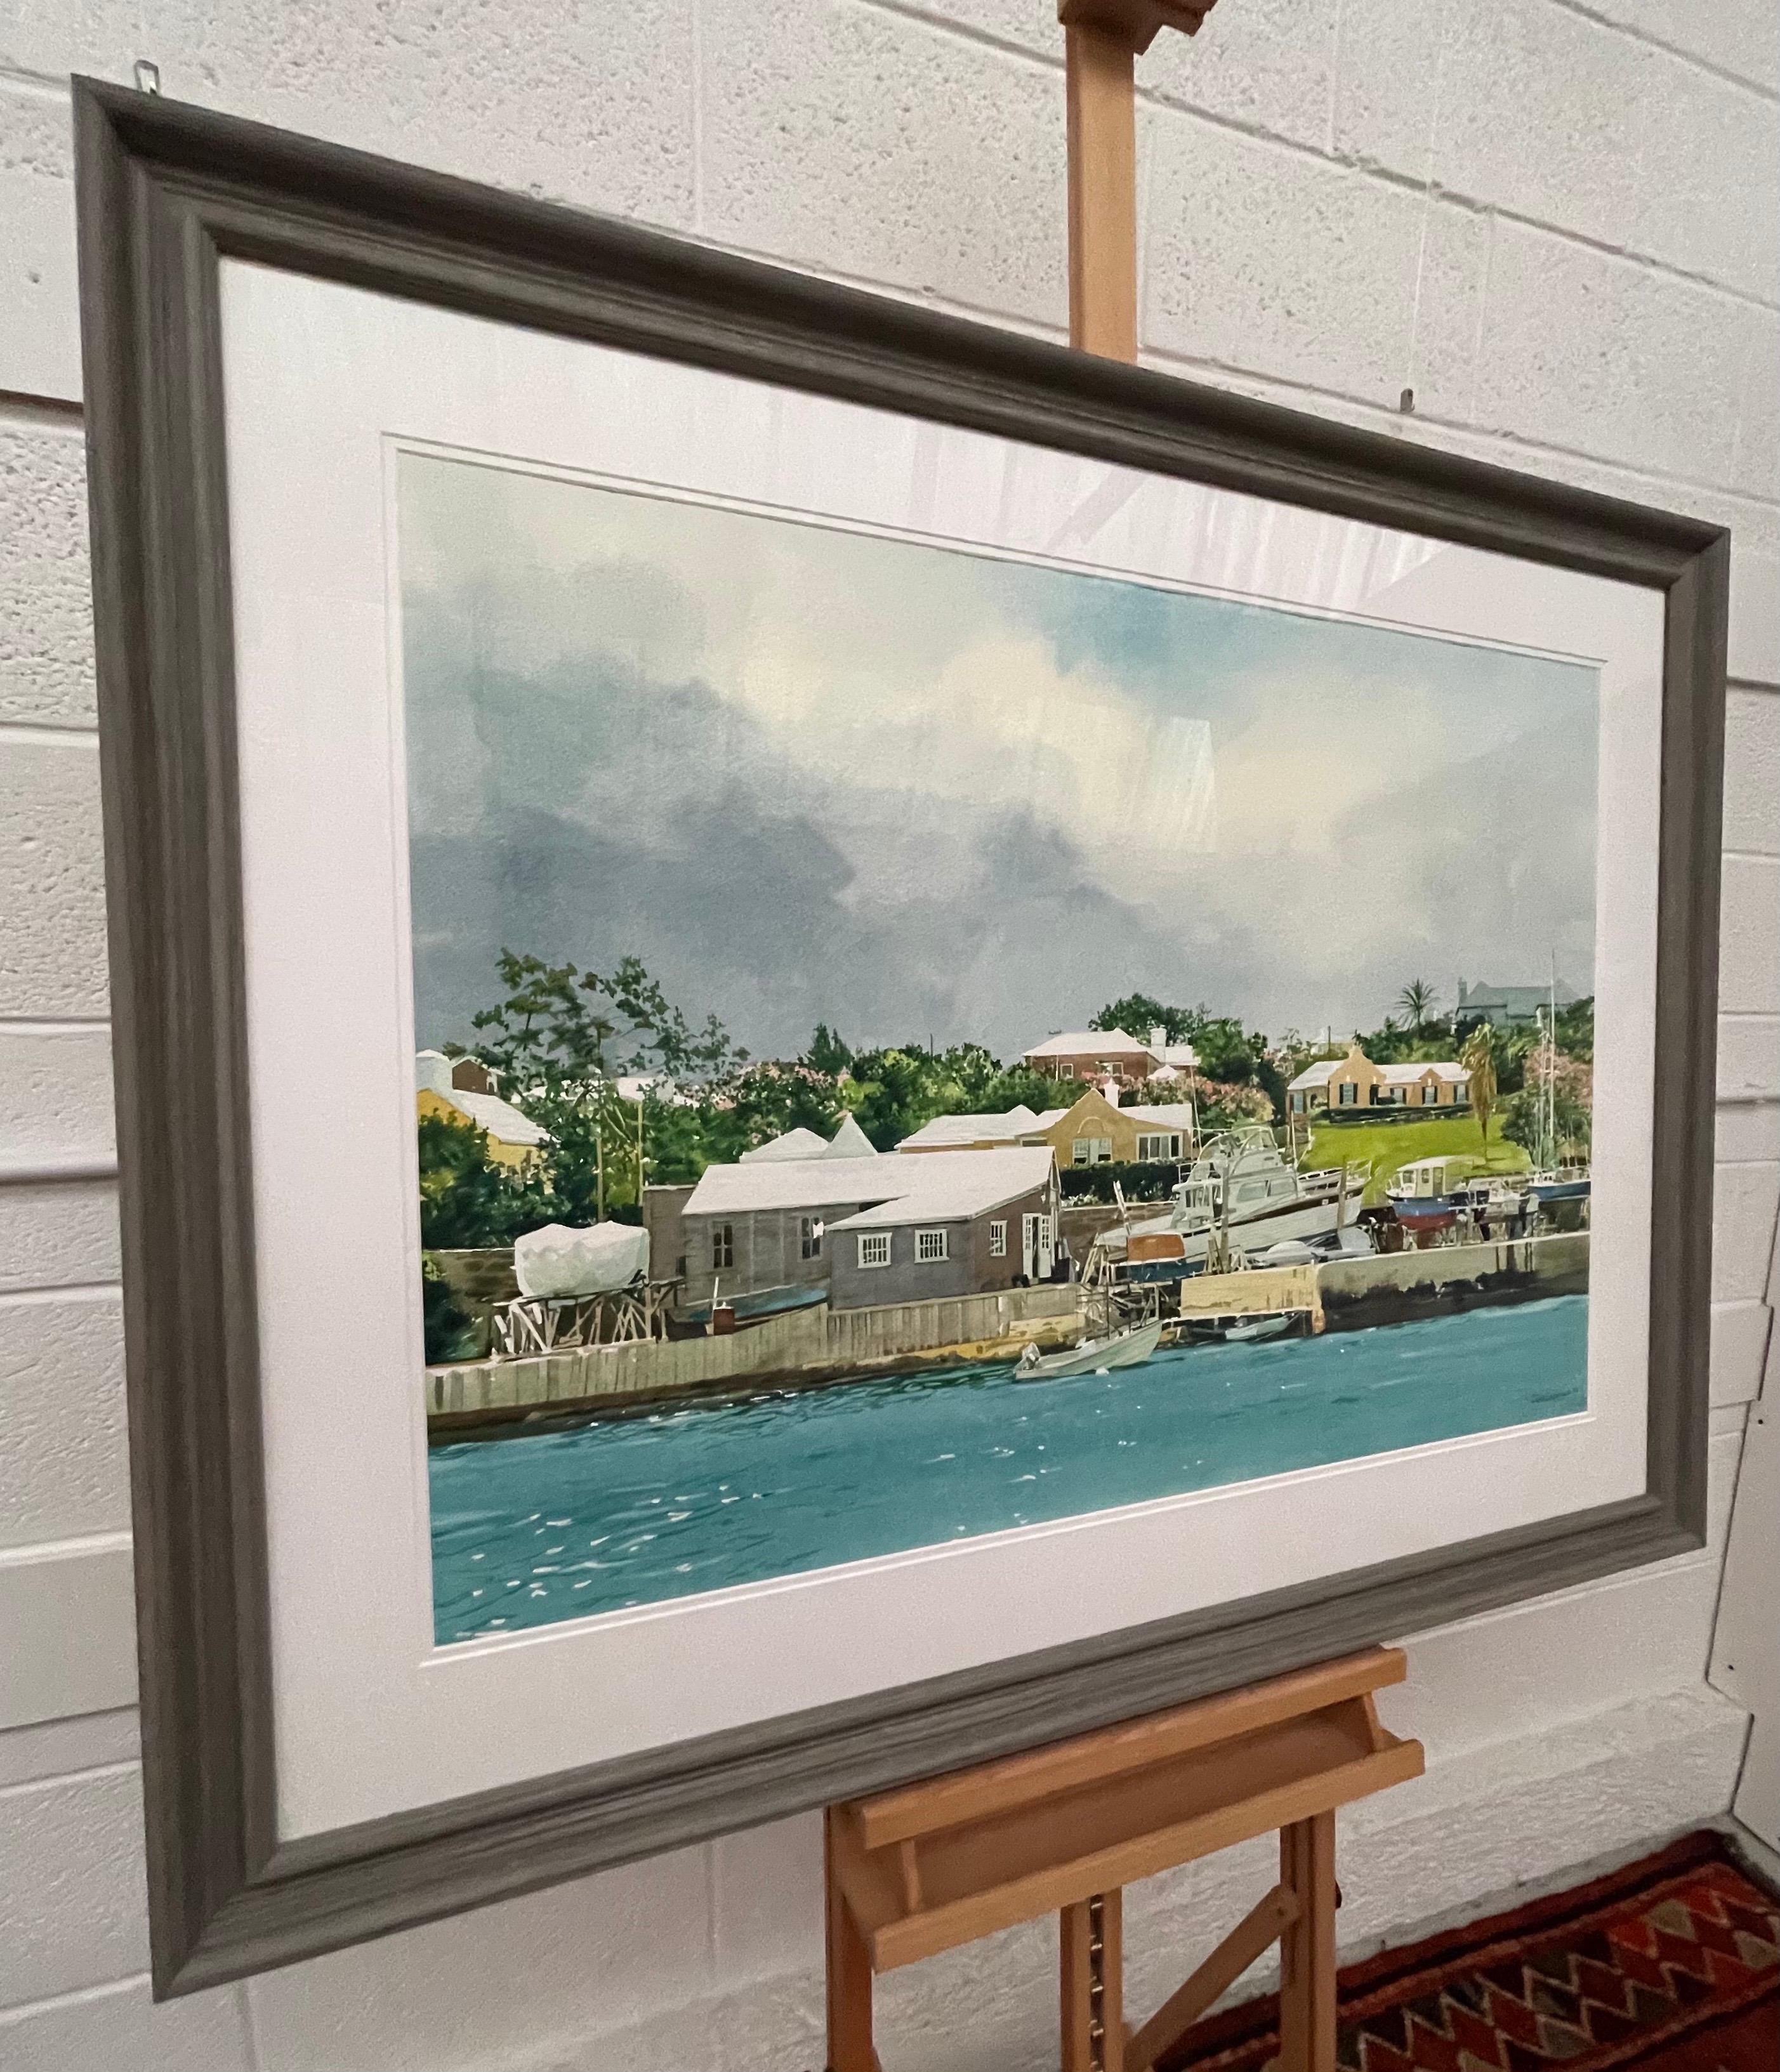 Grande aquarelle de bateaux de satisfaction Moored on the River en Floride par un artiste américain - Art de David Coolidge